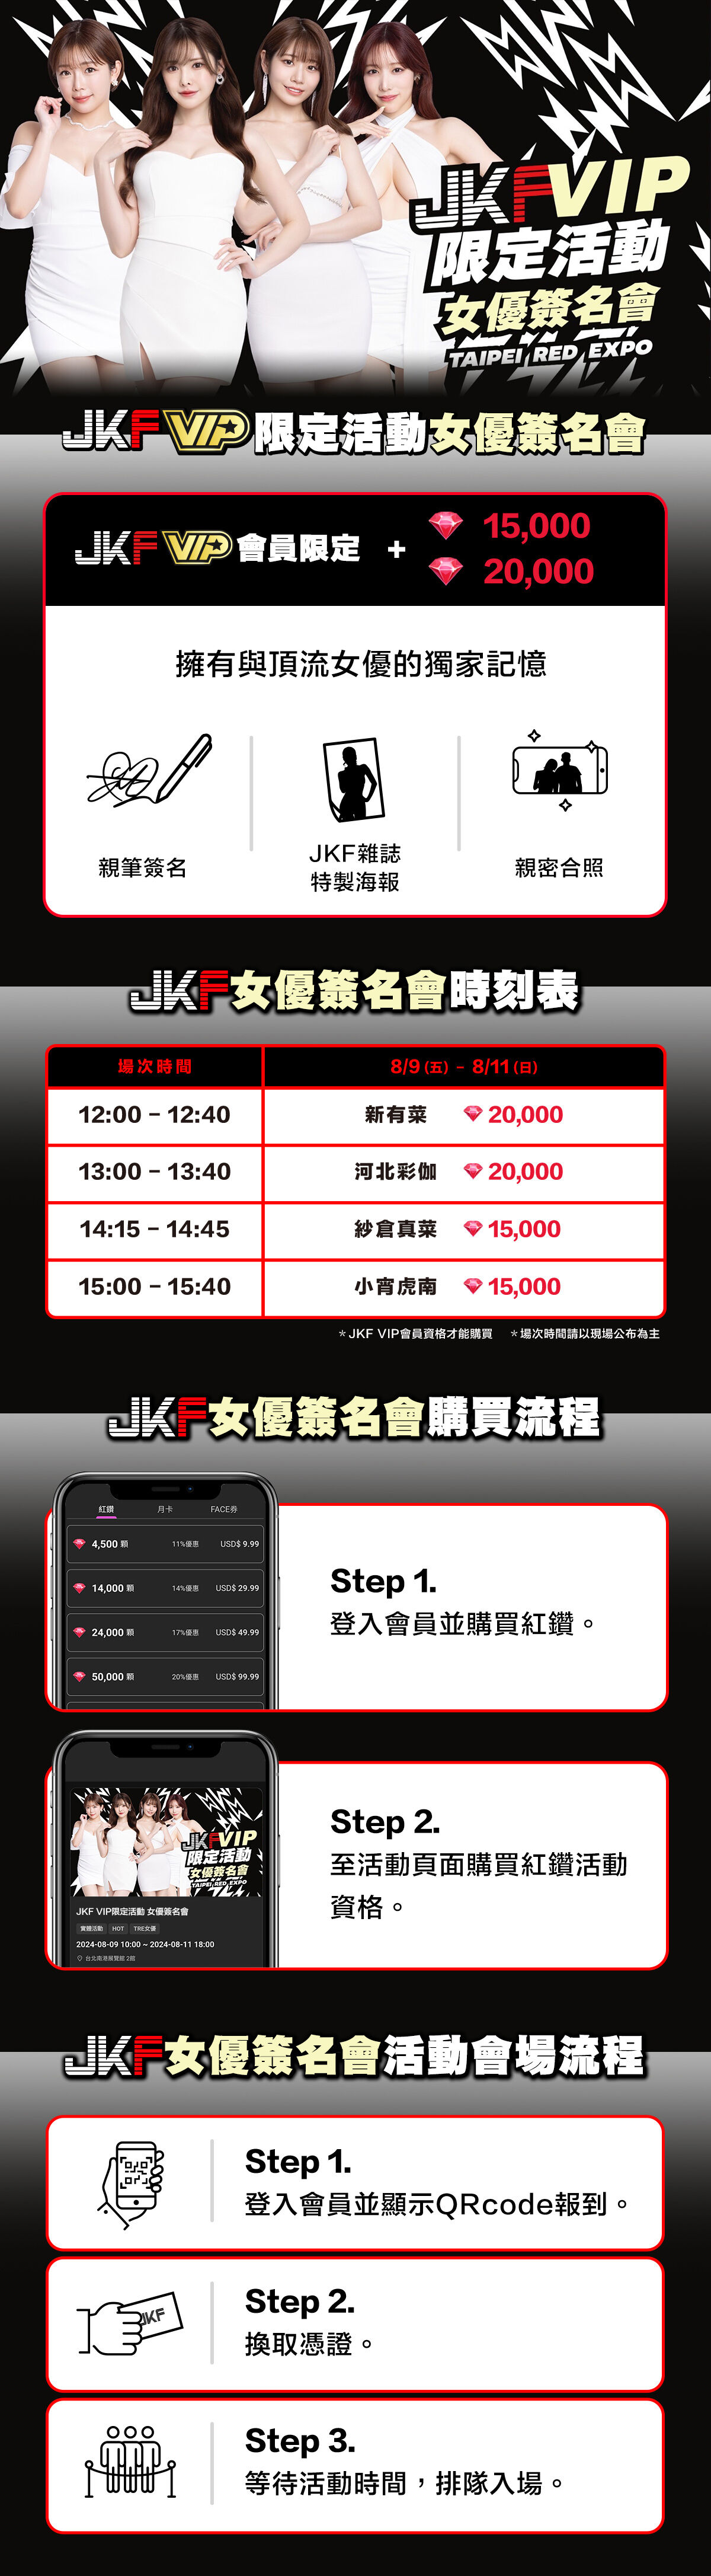 JKF VIP限定活動 女優簽名會 的詳細資訊圖片